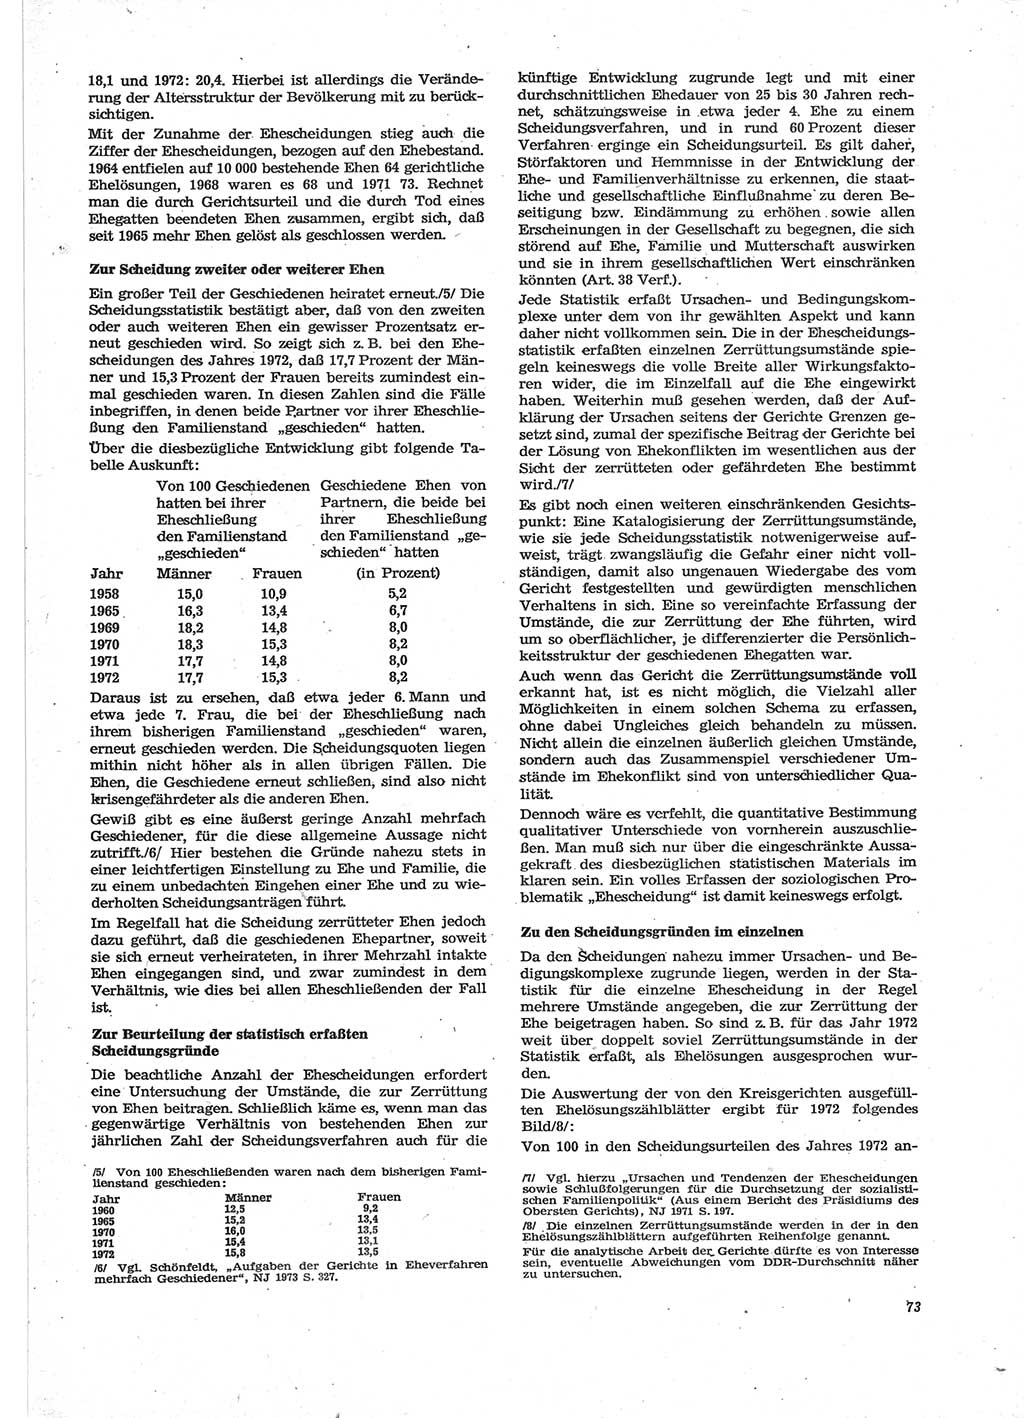 Neue Justiz (NJ), Zeitschrift für Recht und Rechtswissenschaft [Deutsche Demokratische Republik (DDR)], 28. Jahrgang 1974, Seite 73 (NJ DDR 1974, S. 73)